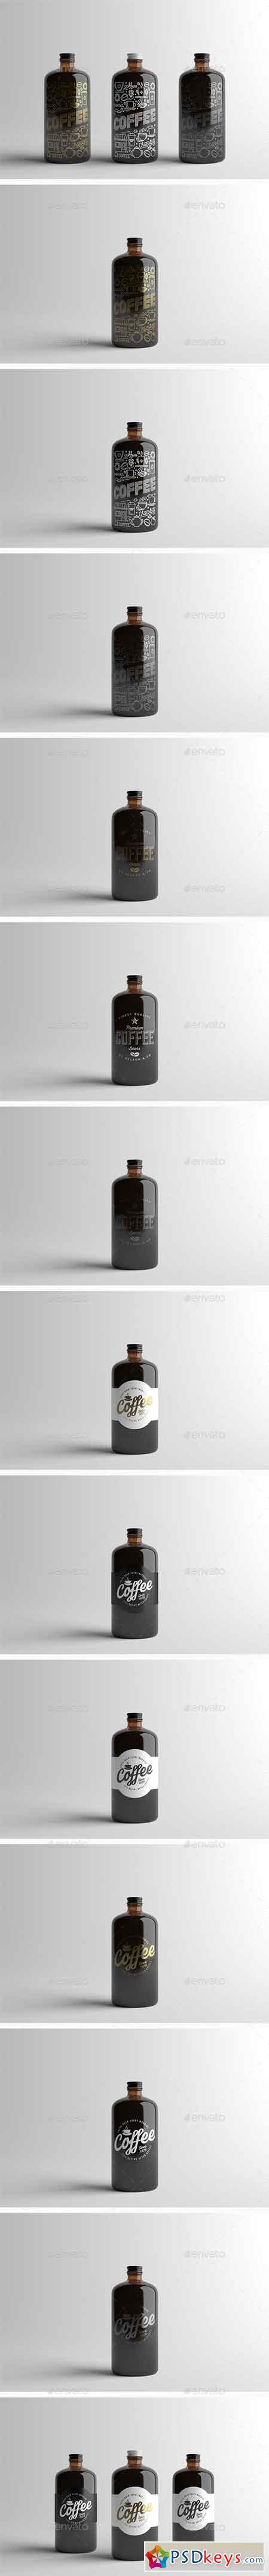 Coffee Bottle Packaging Mock-Up 15512013